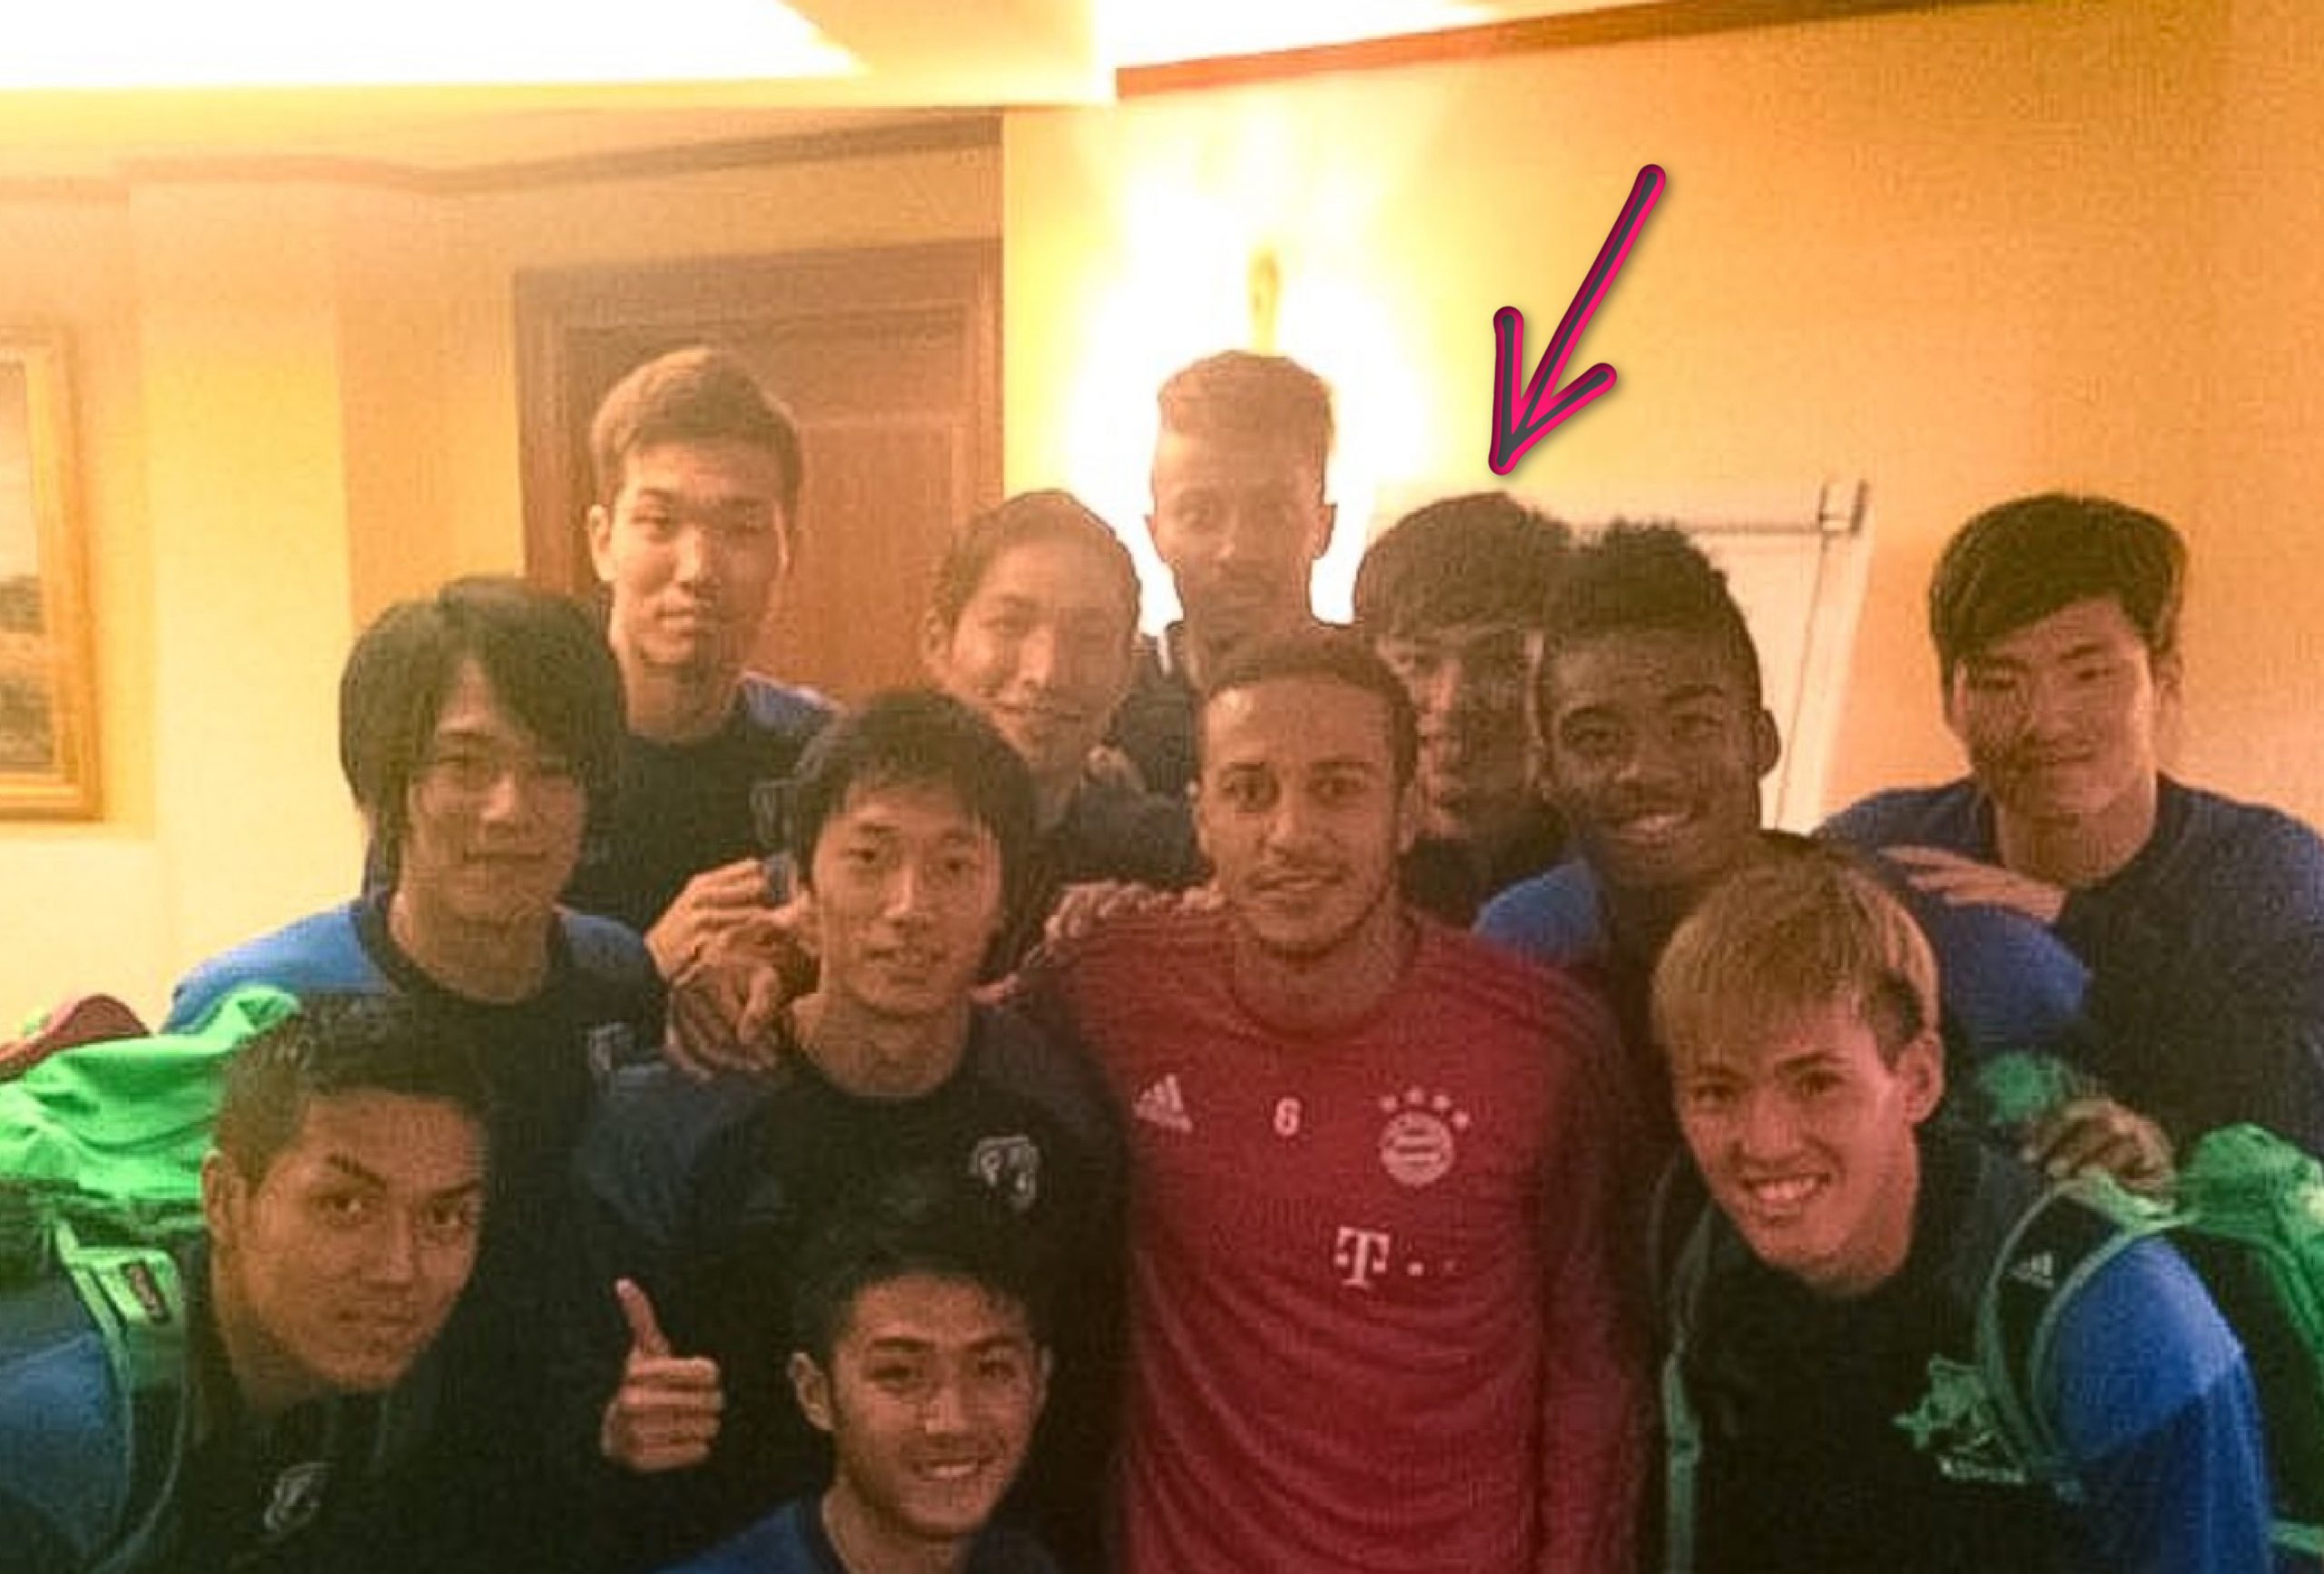 Old photo of Takumi Minamino and Thiago Alcantara from 2016 goes viral among Liverpool fans